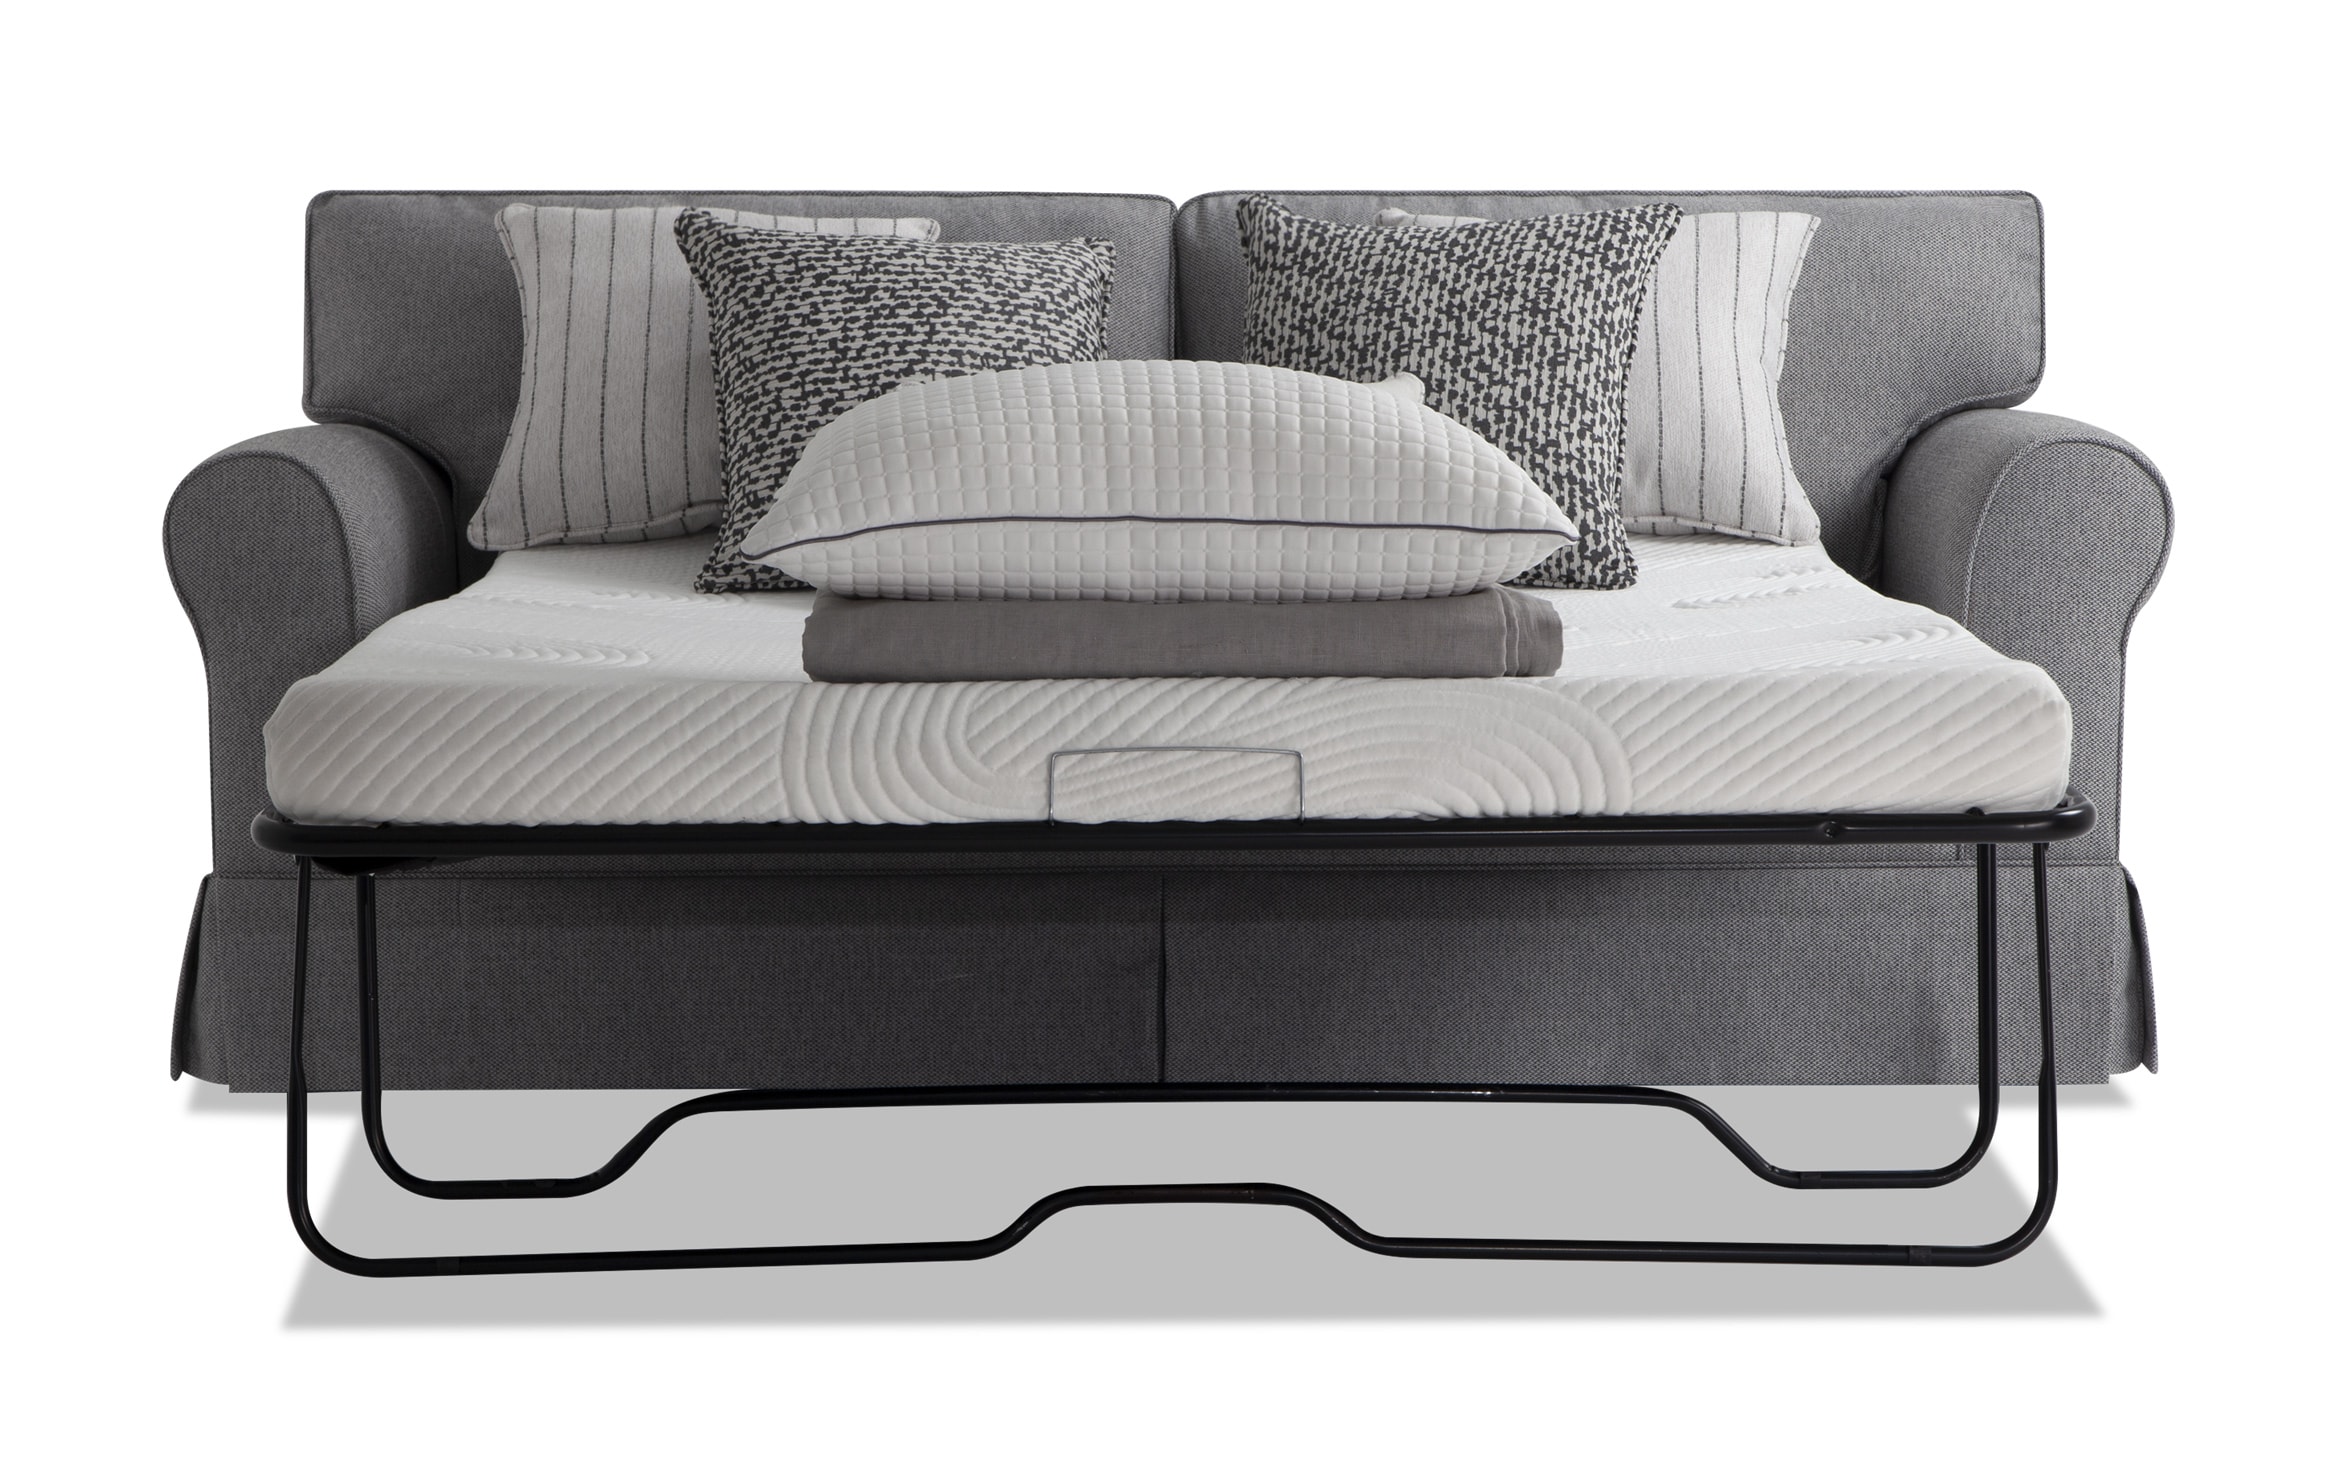 Bob O Pedic Gel Queen Sleeper Sofa, Bobs Sleeper Sofas Full Size